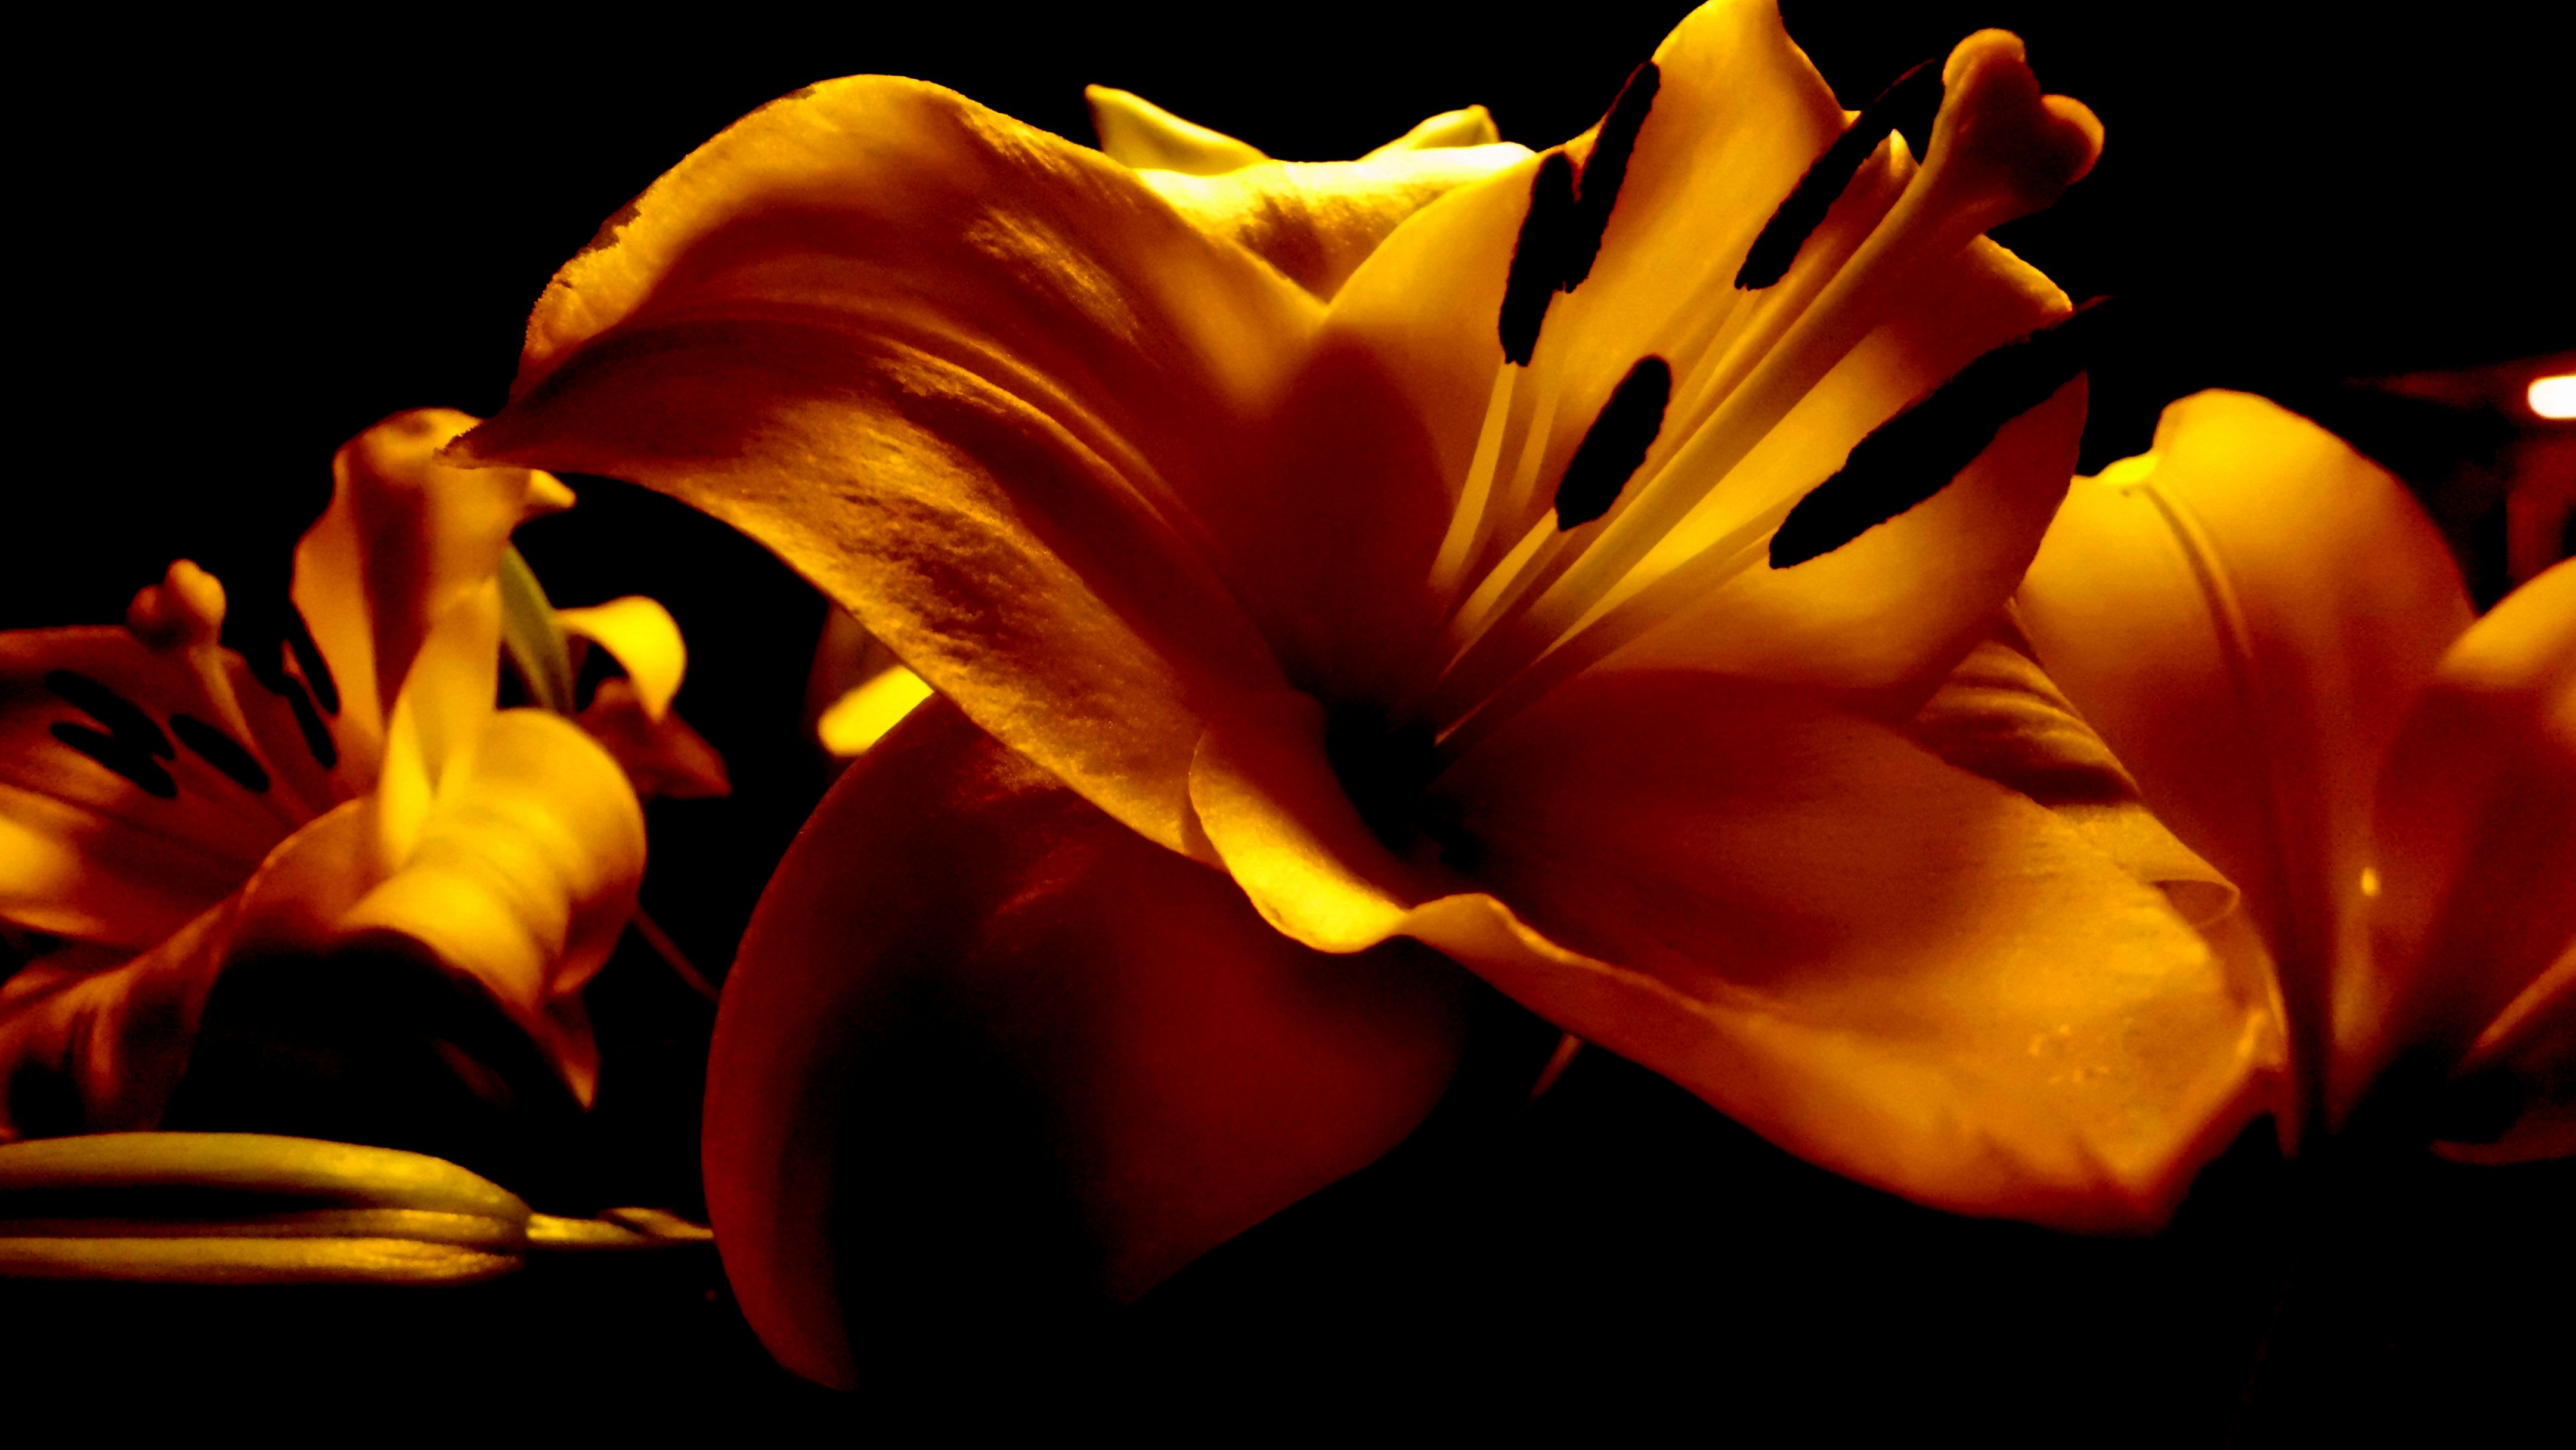 Flower of Gold